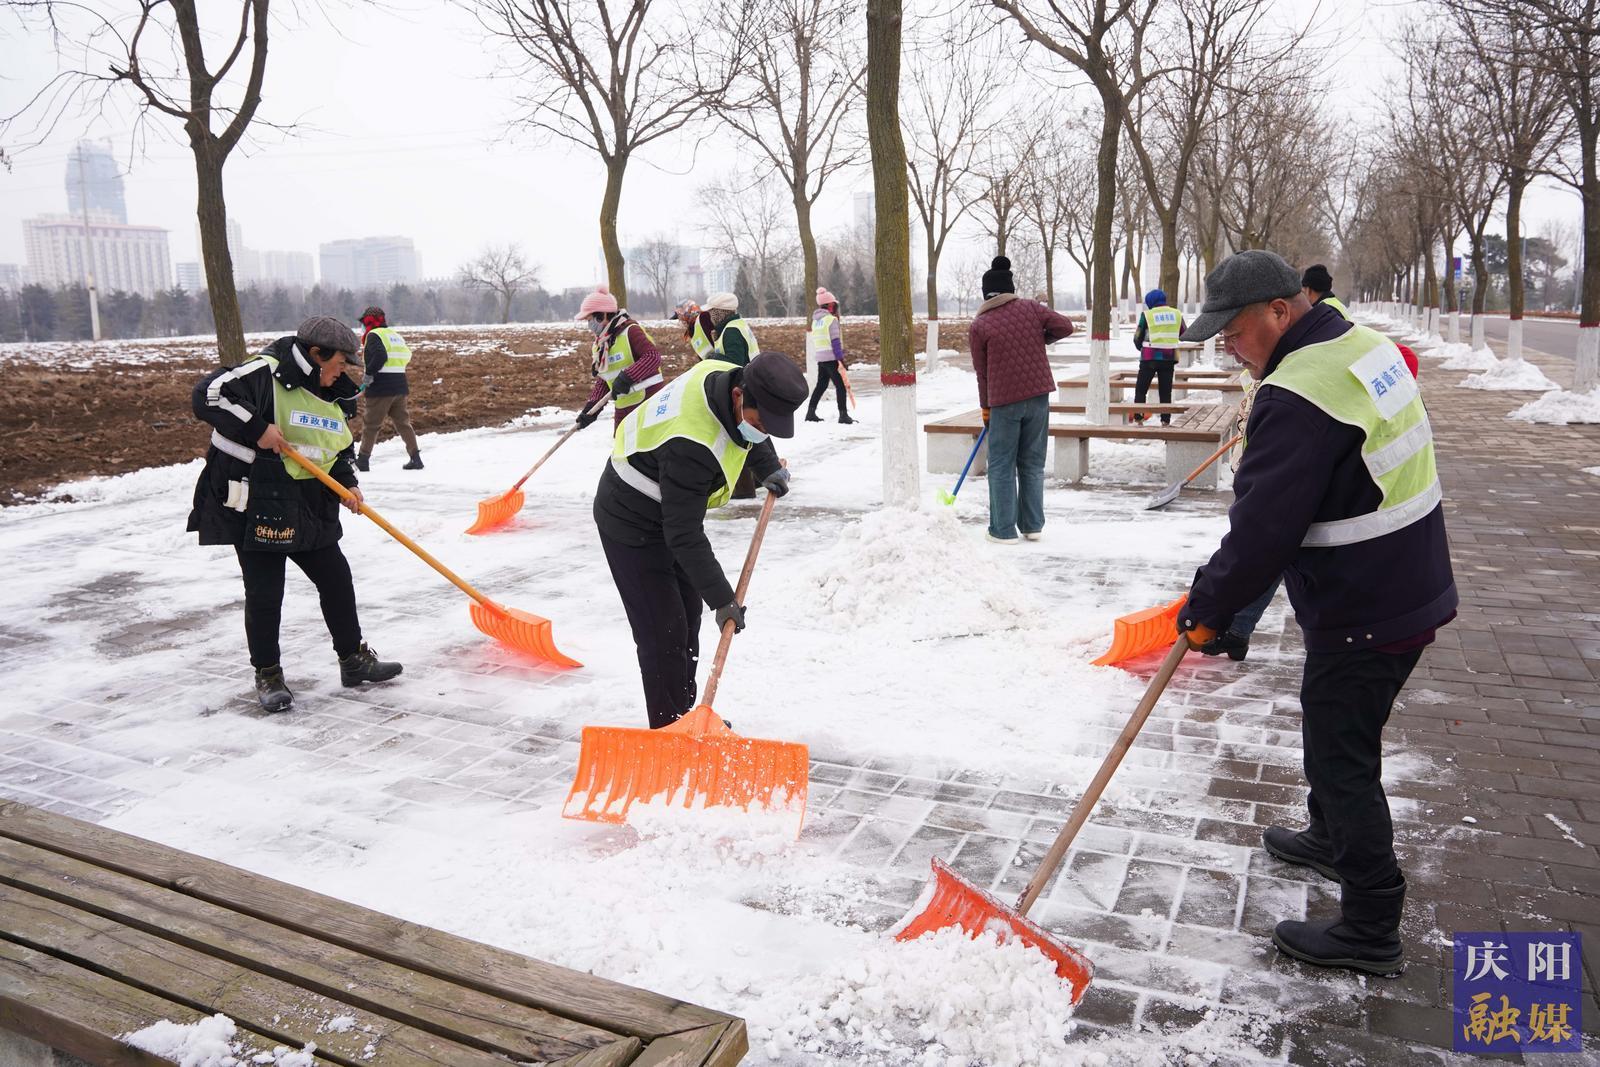 【创建文明城・庆阳在行动】庆阳市城市海绵运动绿地工作人员有序清理路面积雪积冰